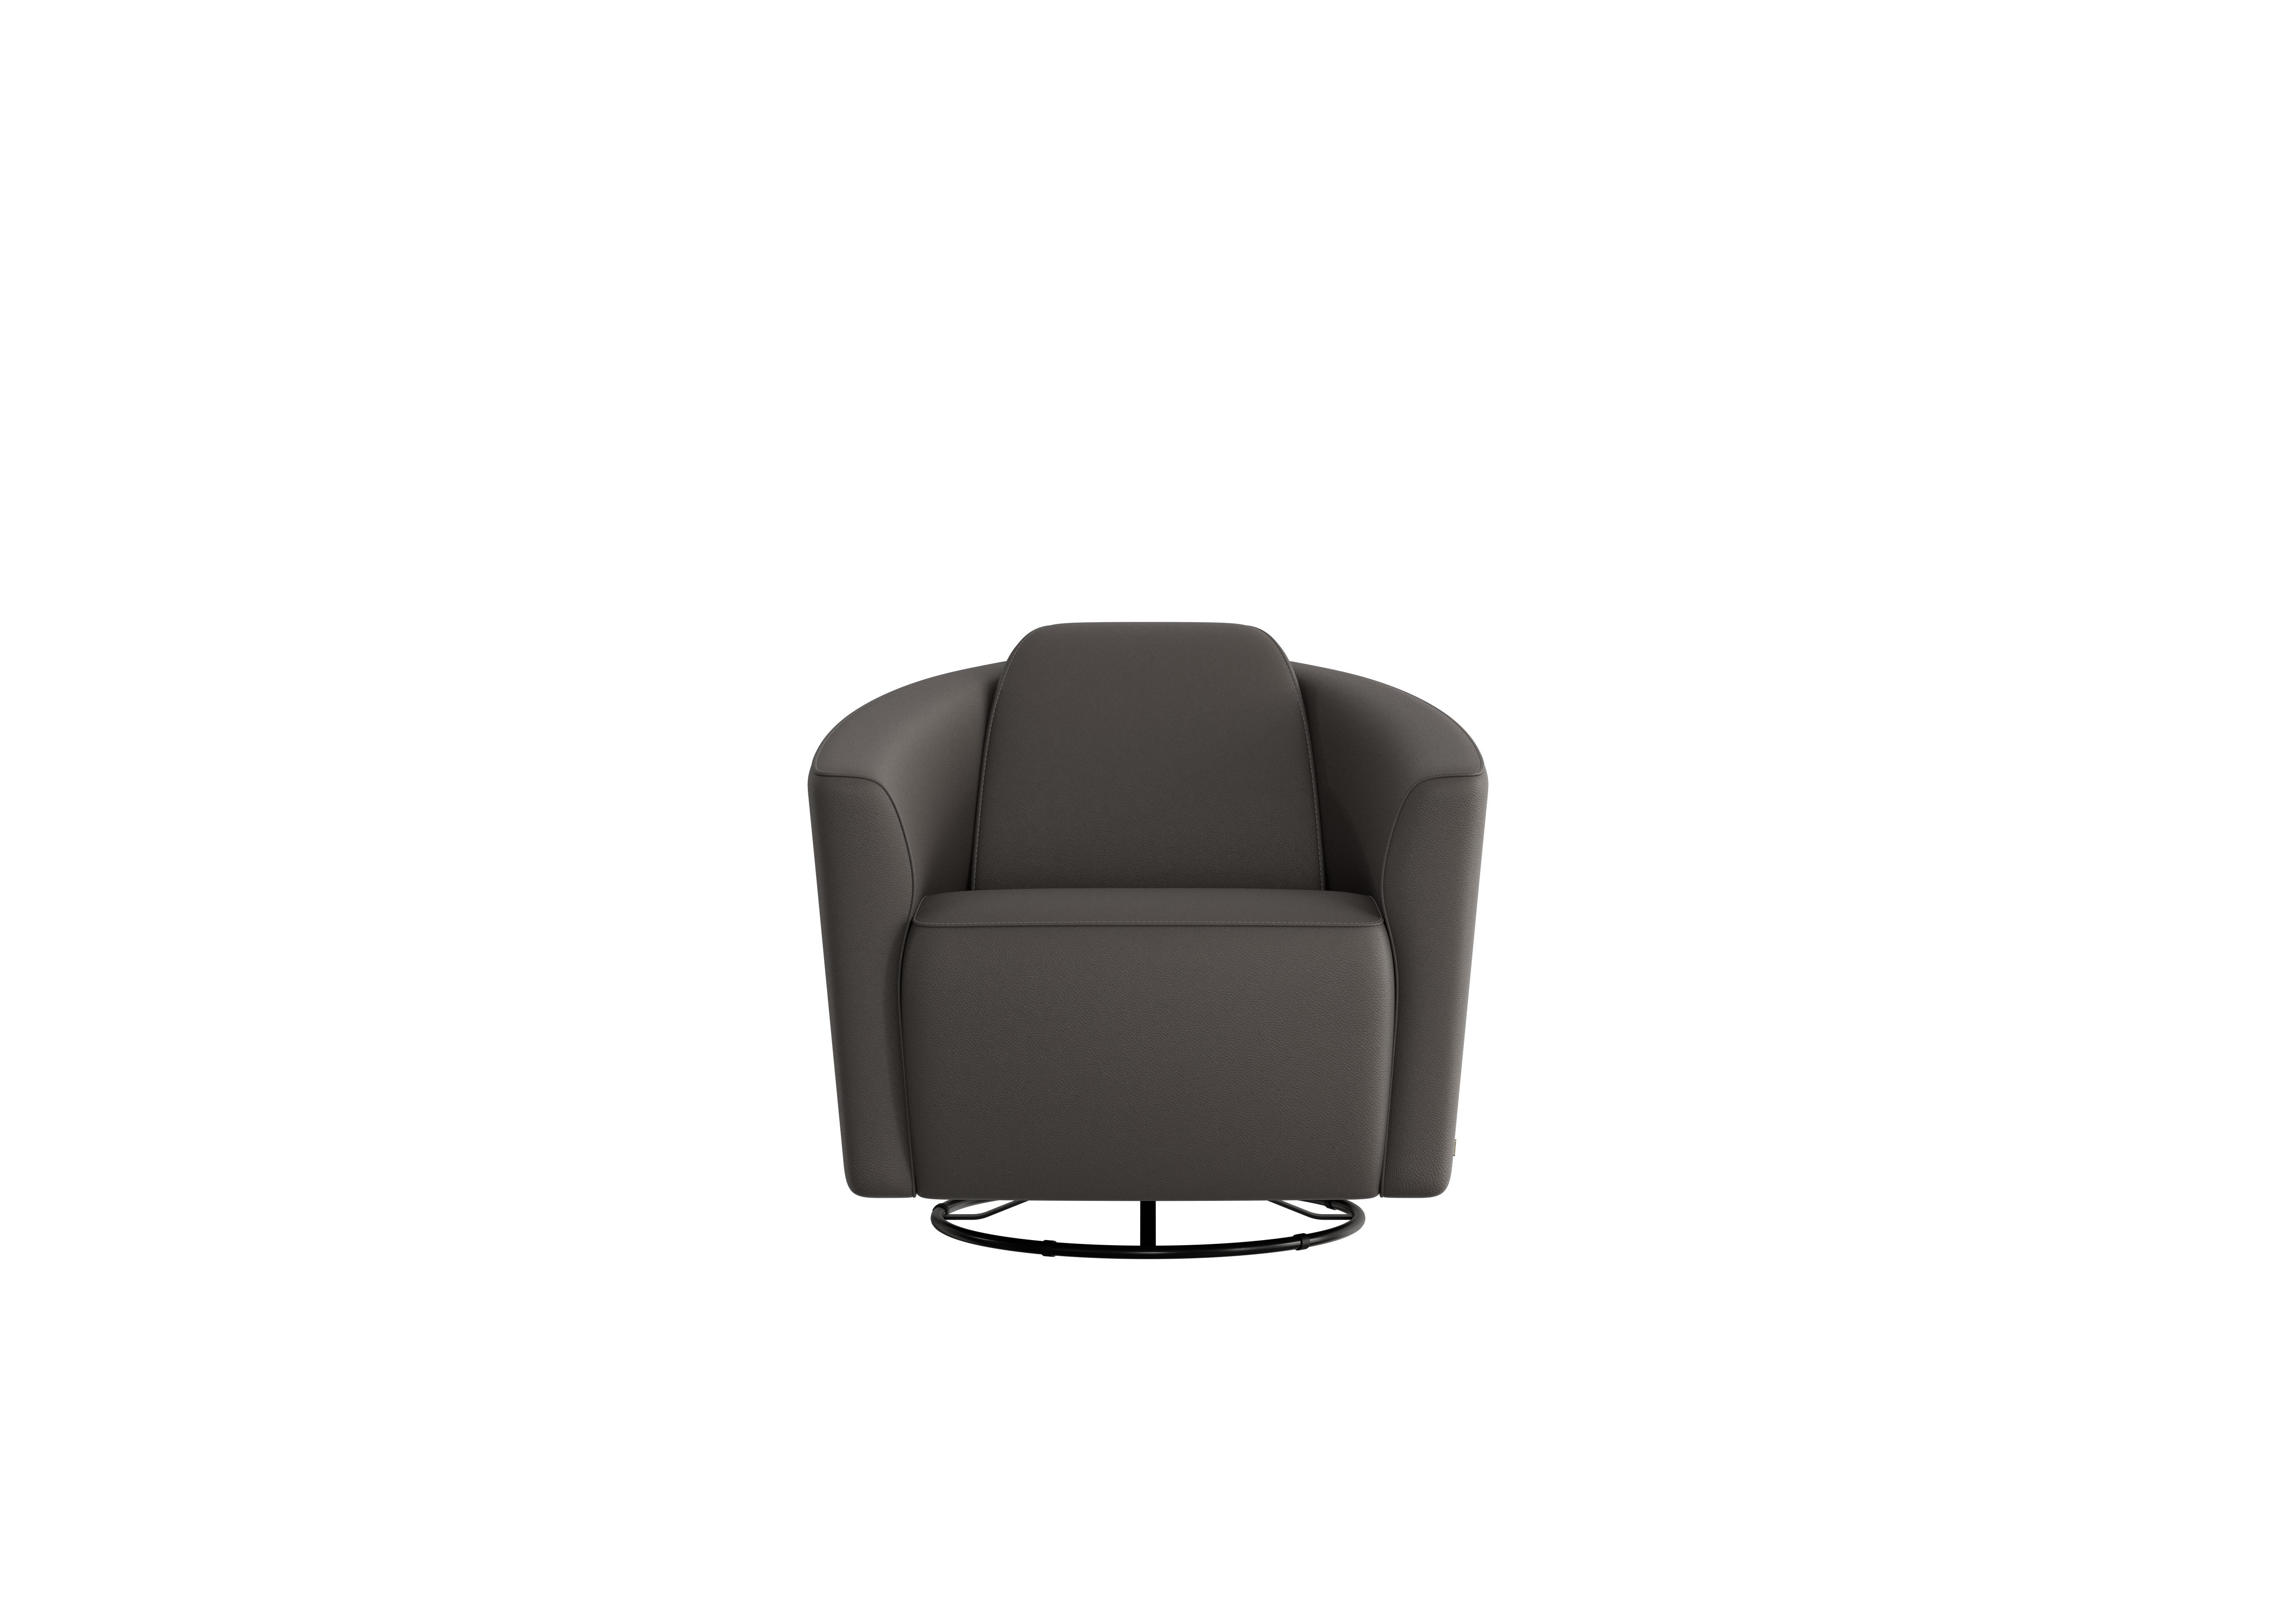 Ketty Leather Swivel Chair in Torello Grigio Scuro 327 on Furniture Village